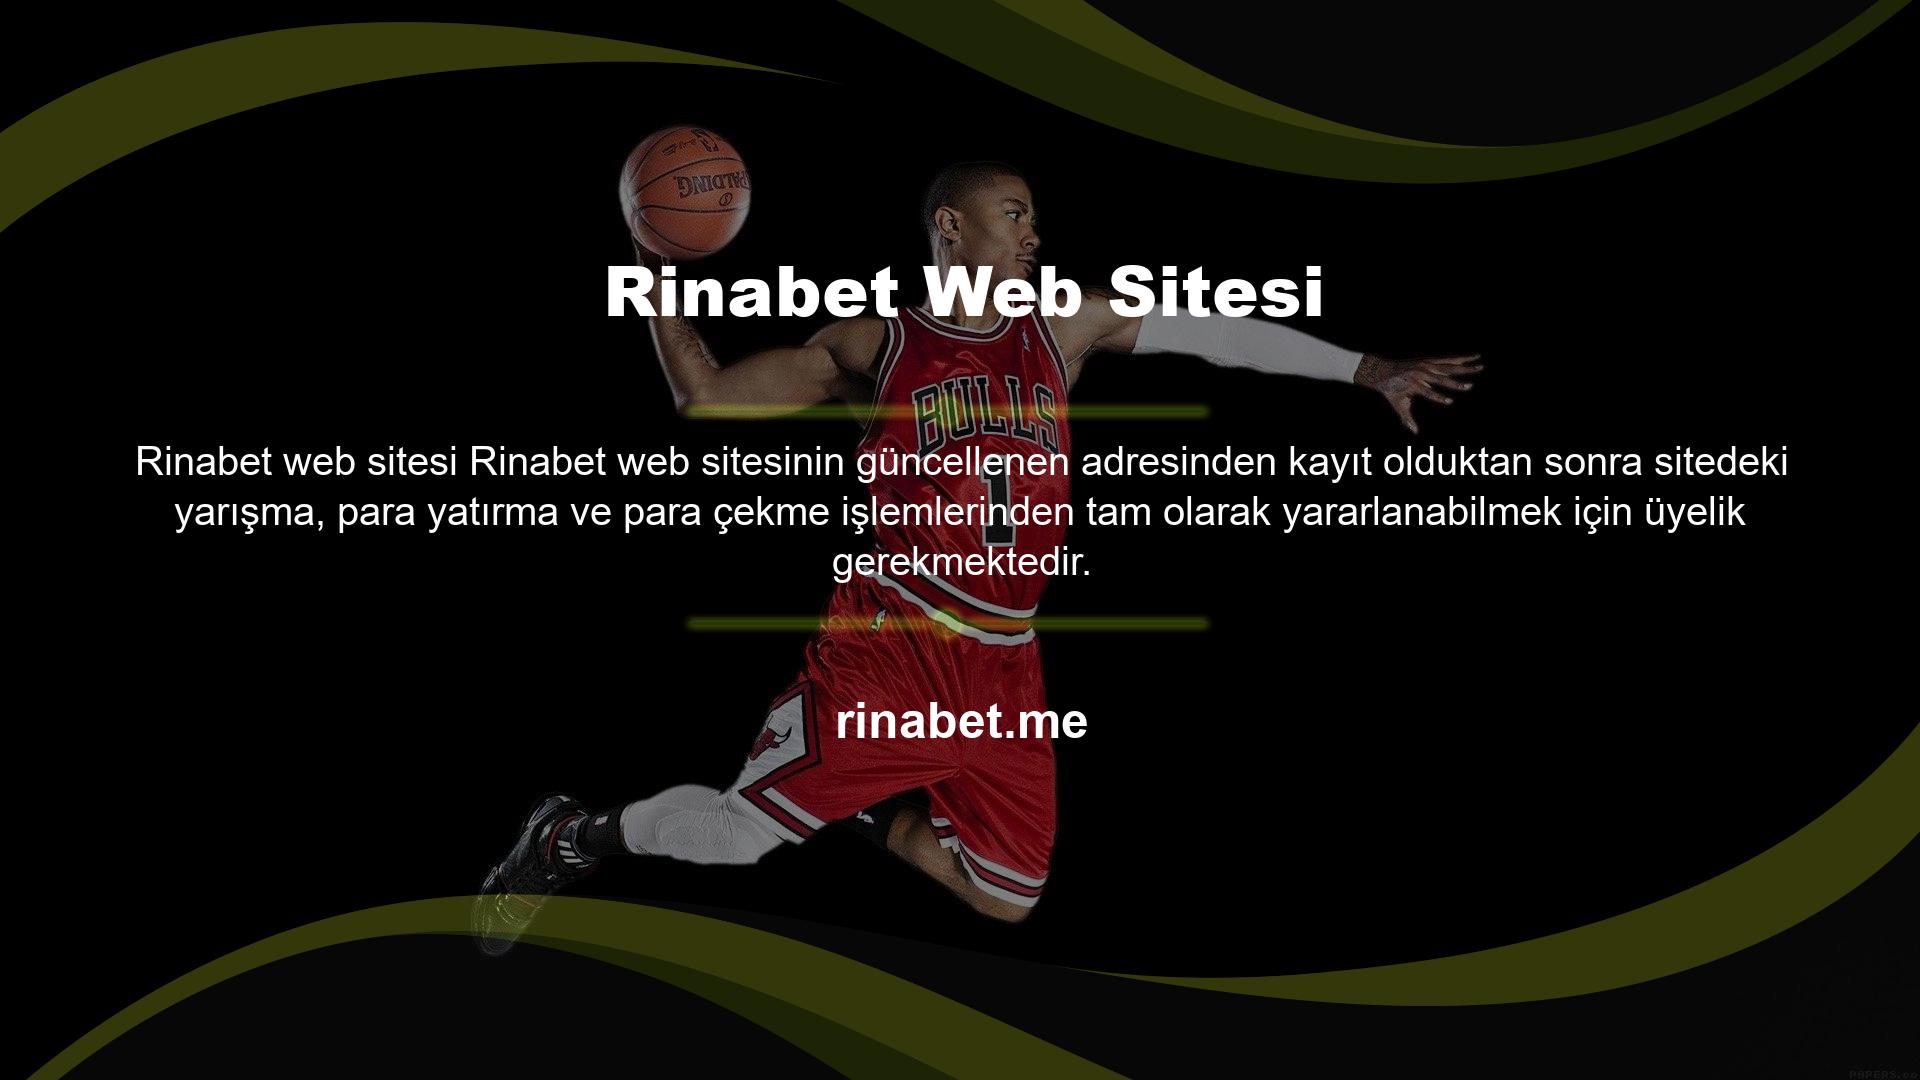 ve kazanmak için Siteye üye olduktan hemen sonra, Rinabet web sitesi giriş yaparken oluşturduğunuz kullanıcı adı ve şifre ile Rinabet sitesine tekrar giriş yapabilirsiniz